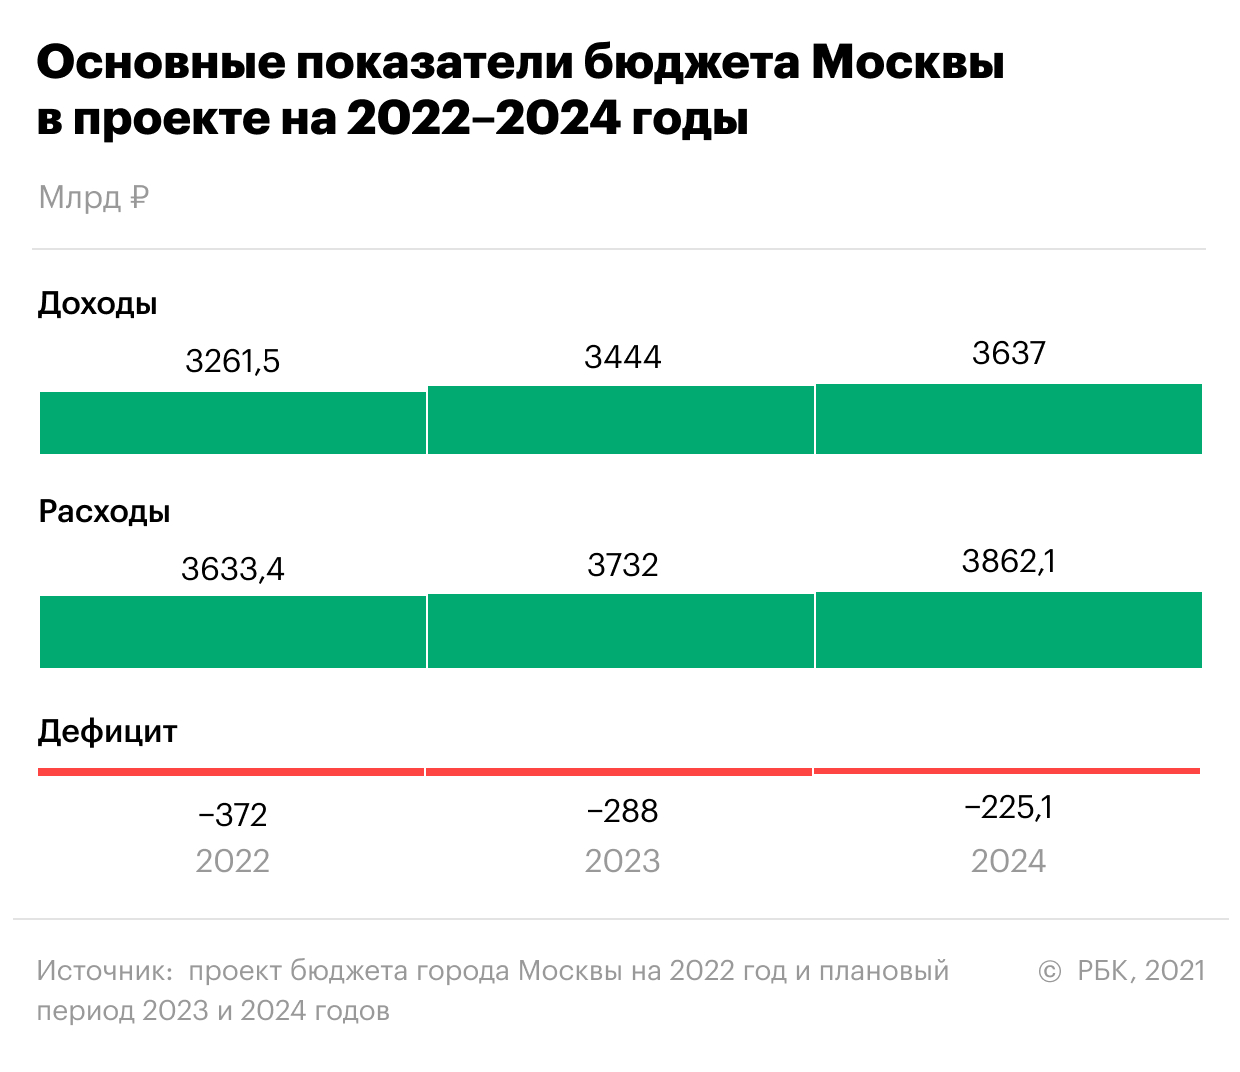 Москва запланировала рост инвестиций быстрее, чем в стране